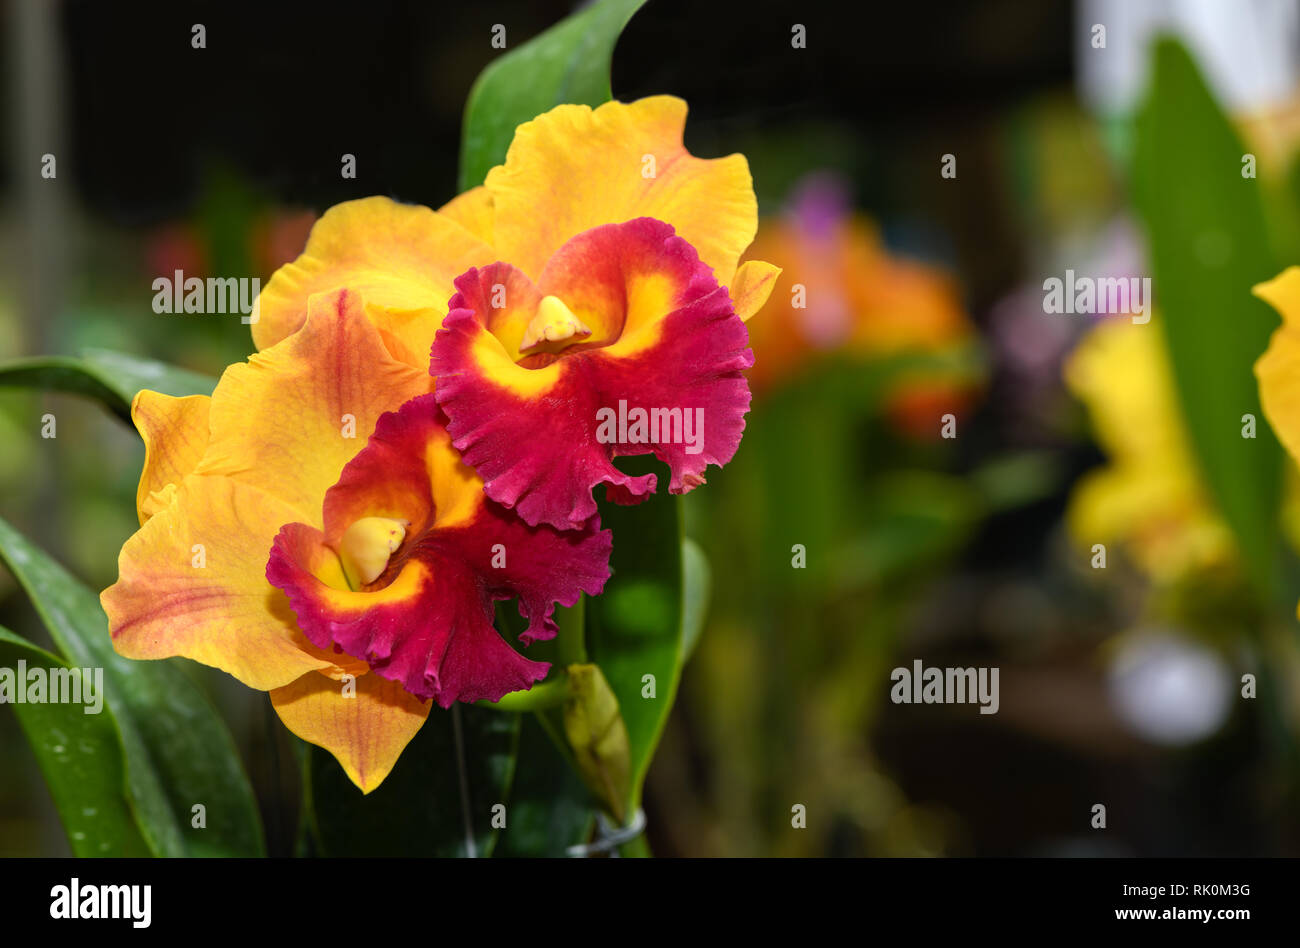 Bel colore arancione con red hybrid Cattleya orchid fiore in giardino, sullo sfondo della natura Foto Stock